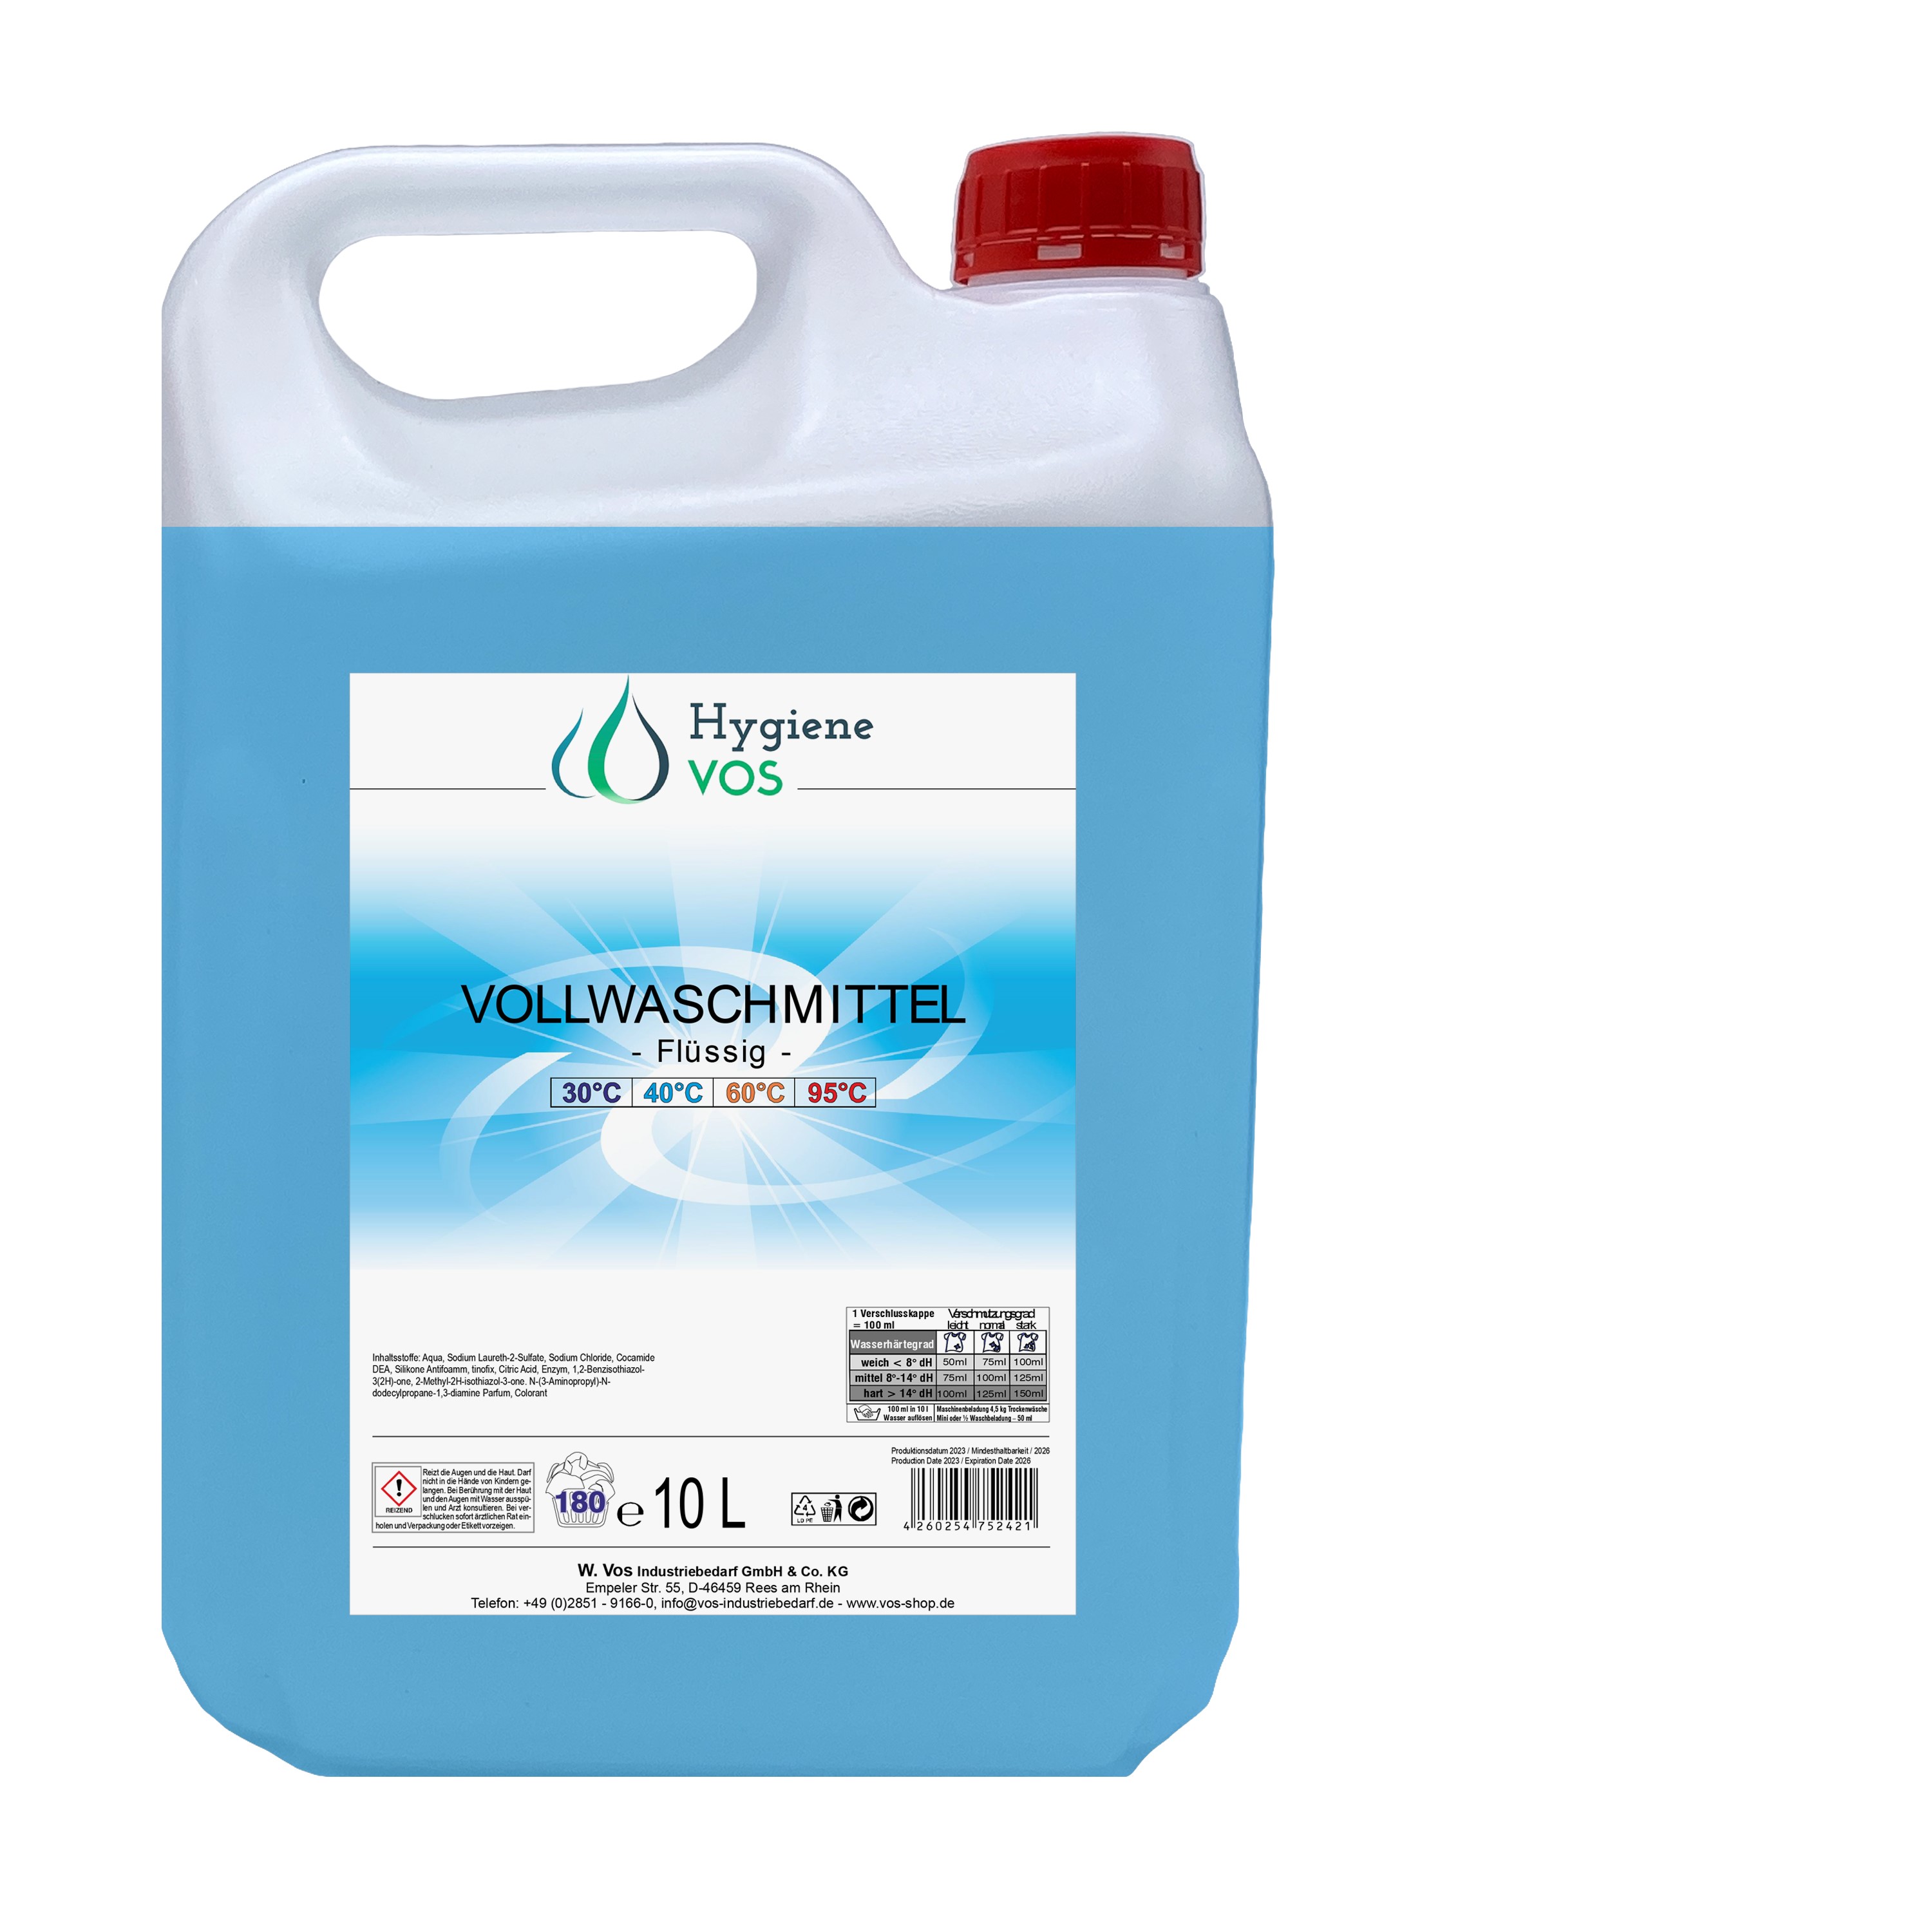 Hygiene Vos Vollwaschmittel flüssig 1,5 Liter / 10 Liter